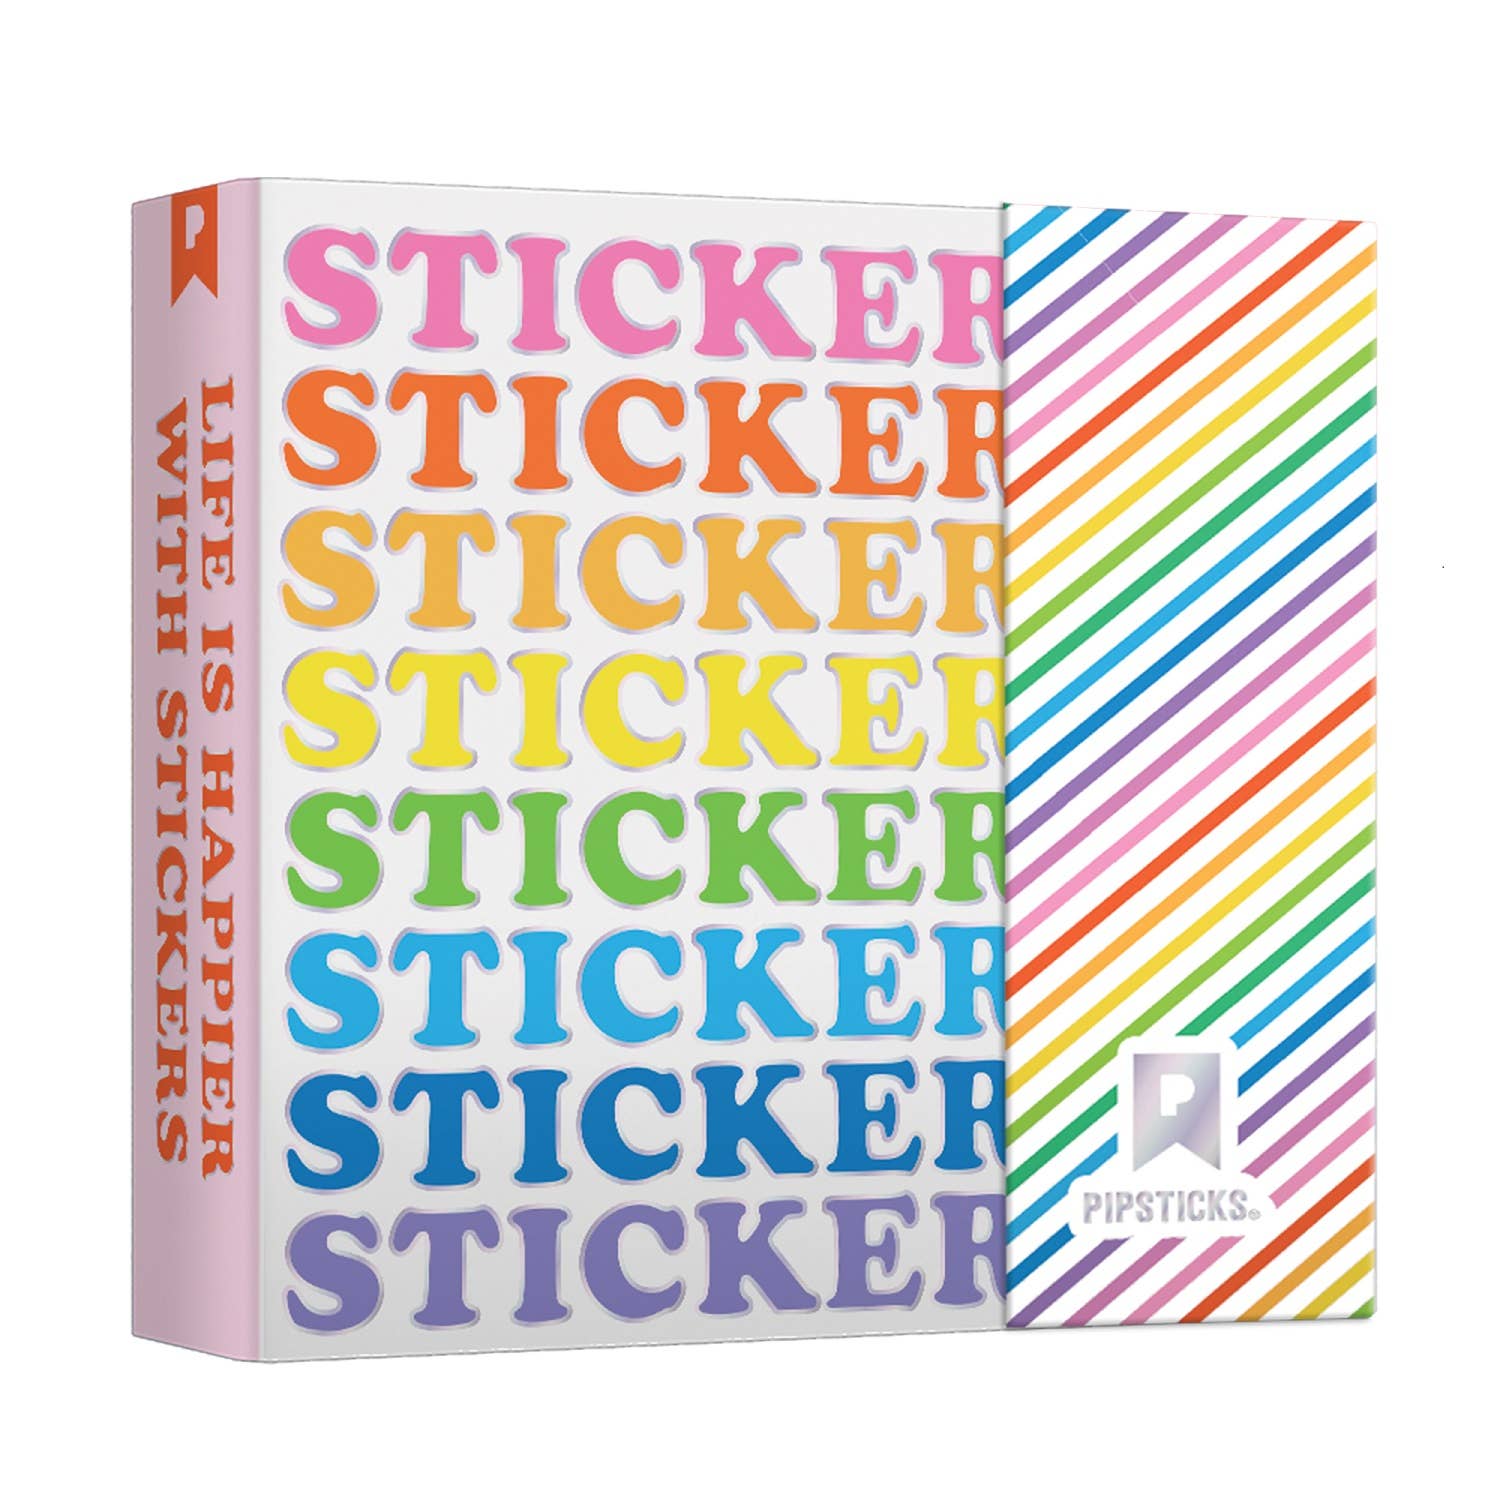 Pipsticks Sticker Keeper Album With STICKERS Storage Organizer Binder New  UNUSED